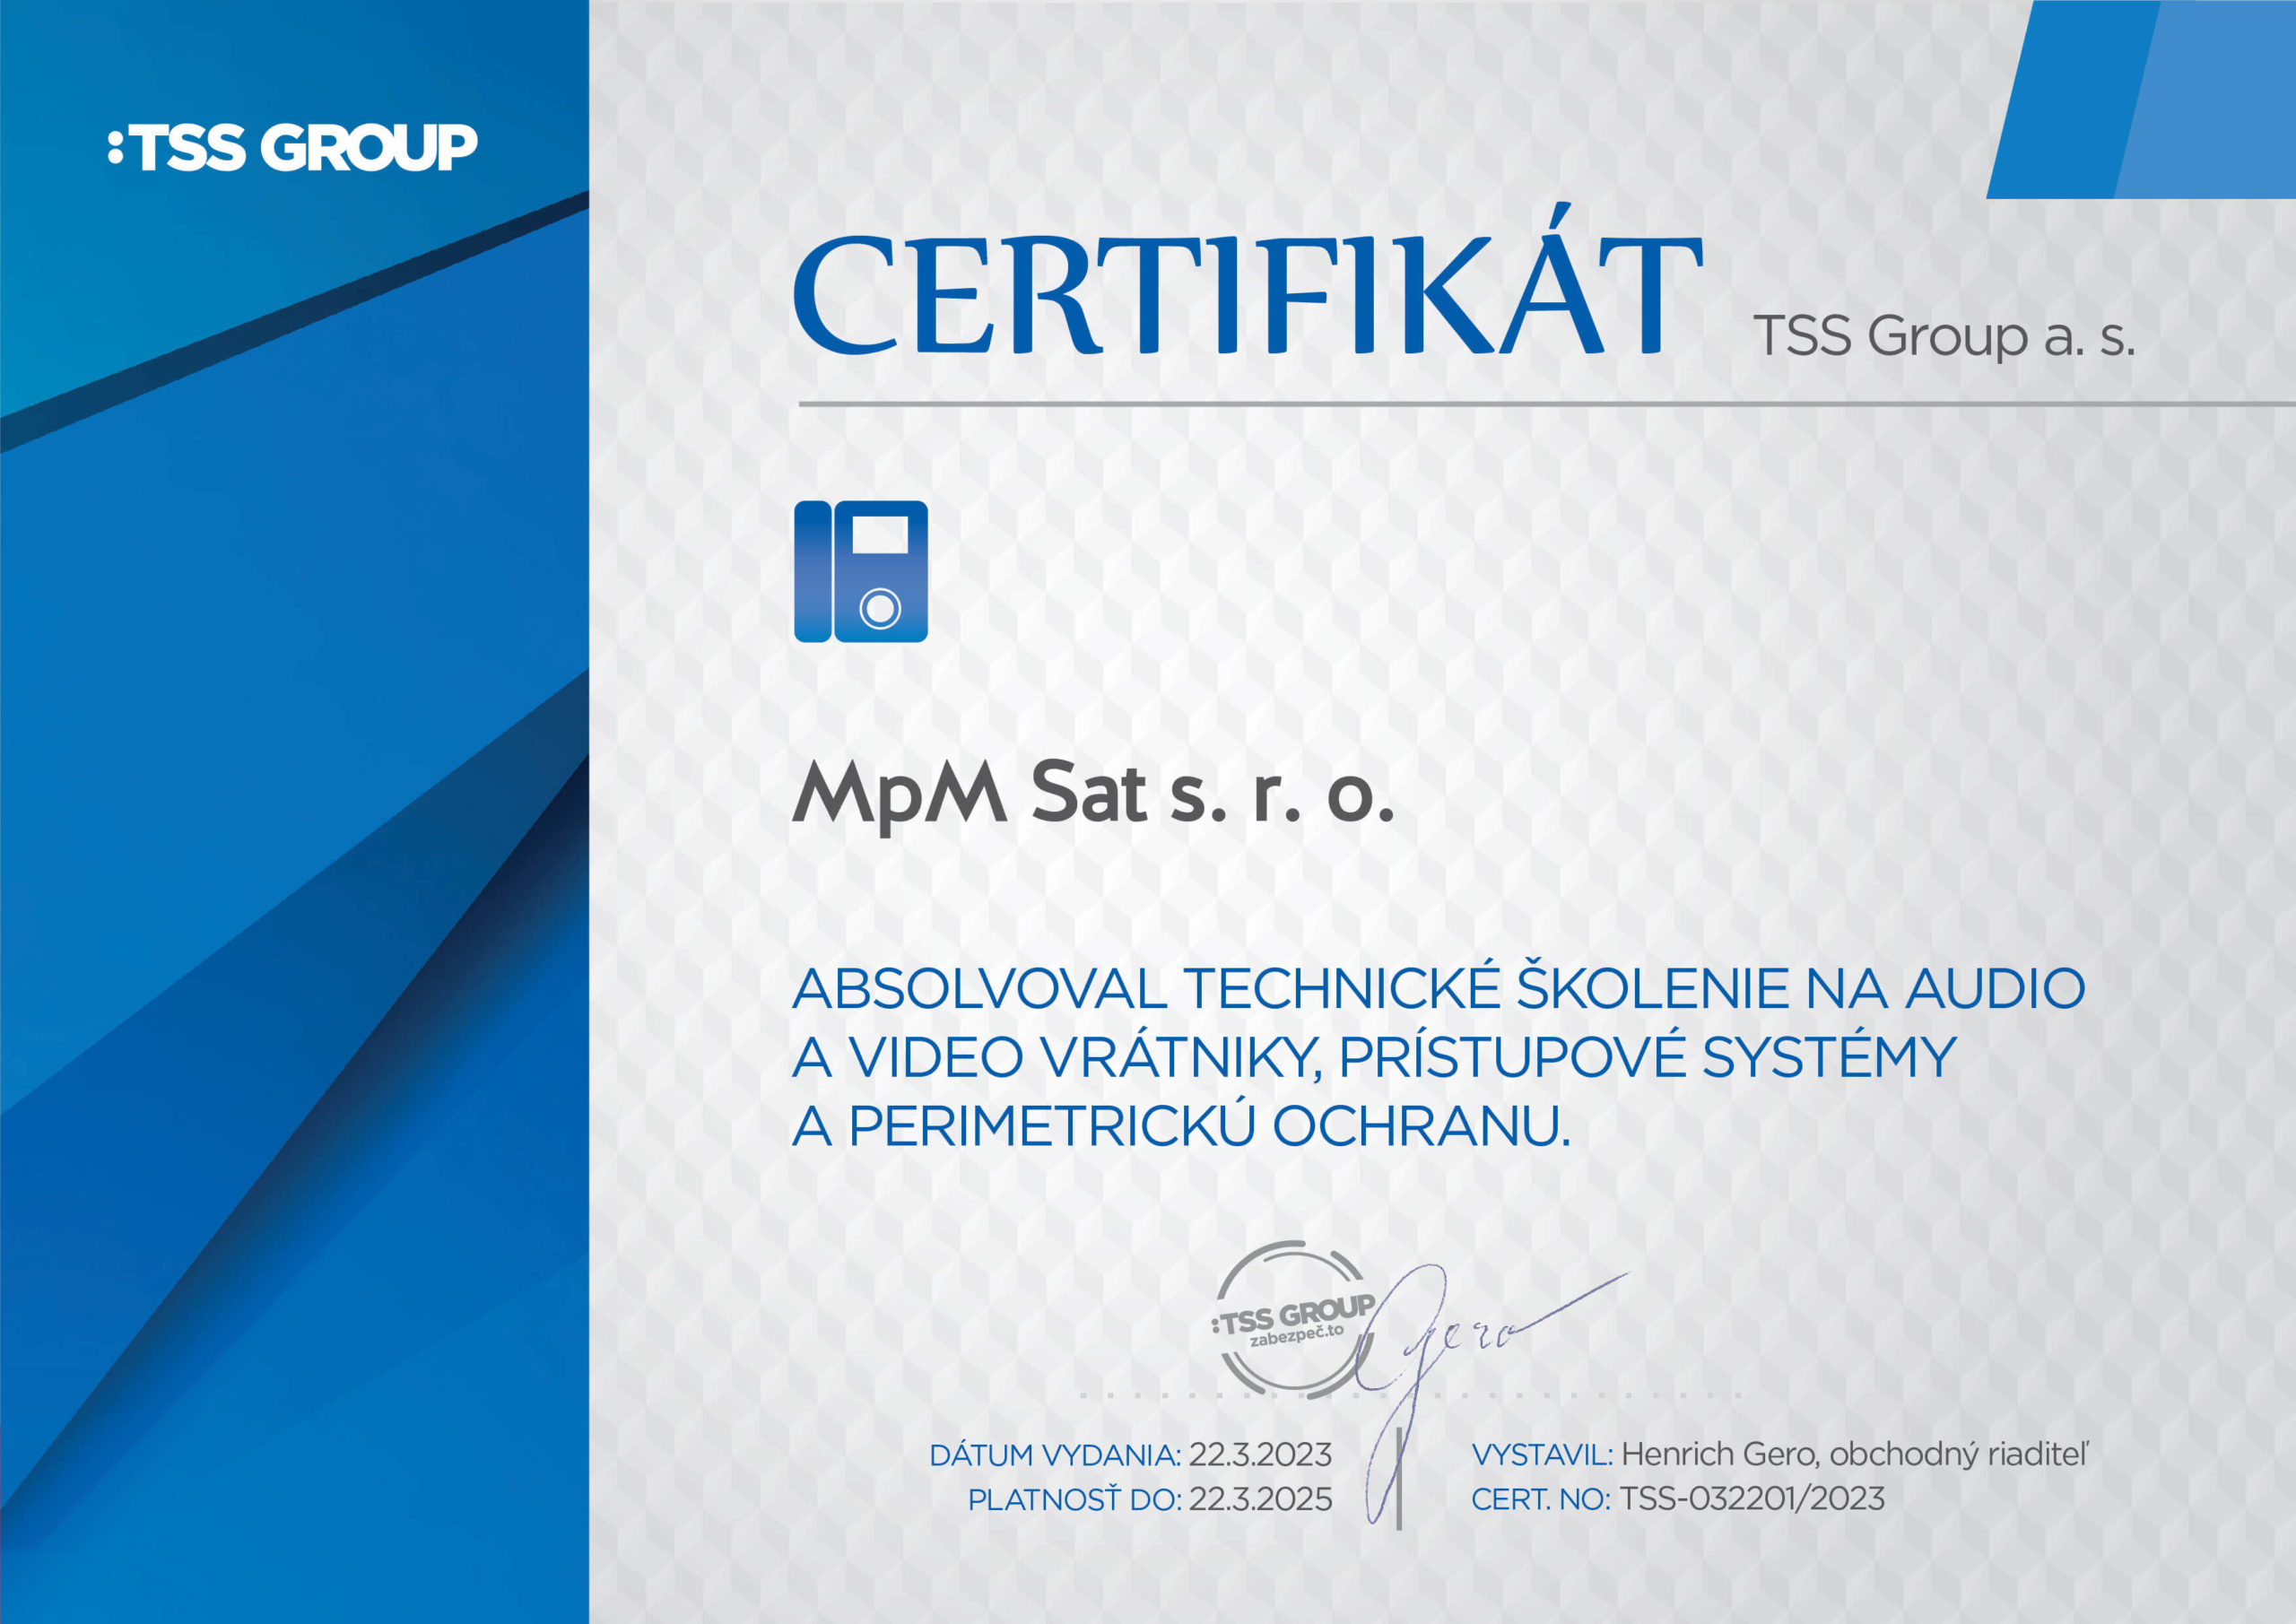 certifikat-ddz-mpmsat-01 (1) (1)